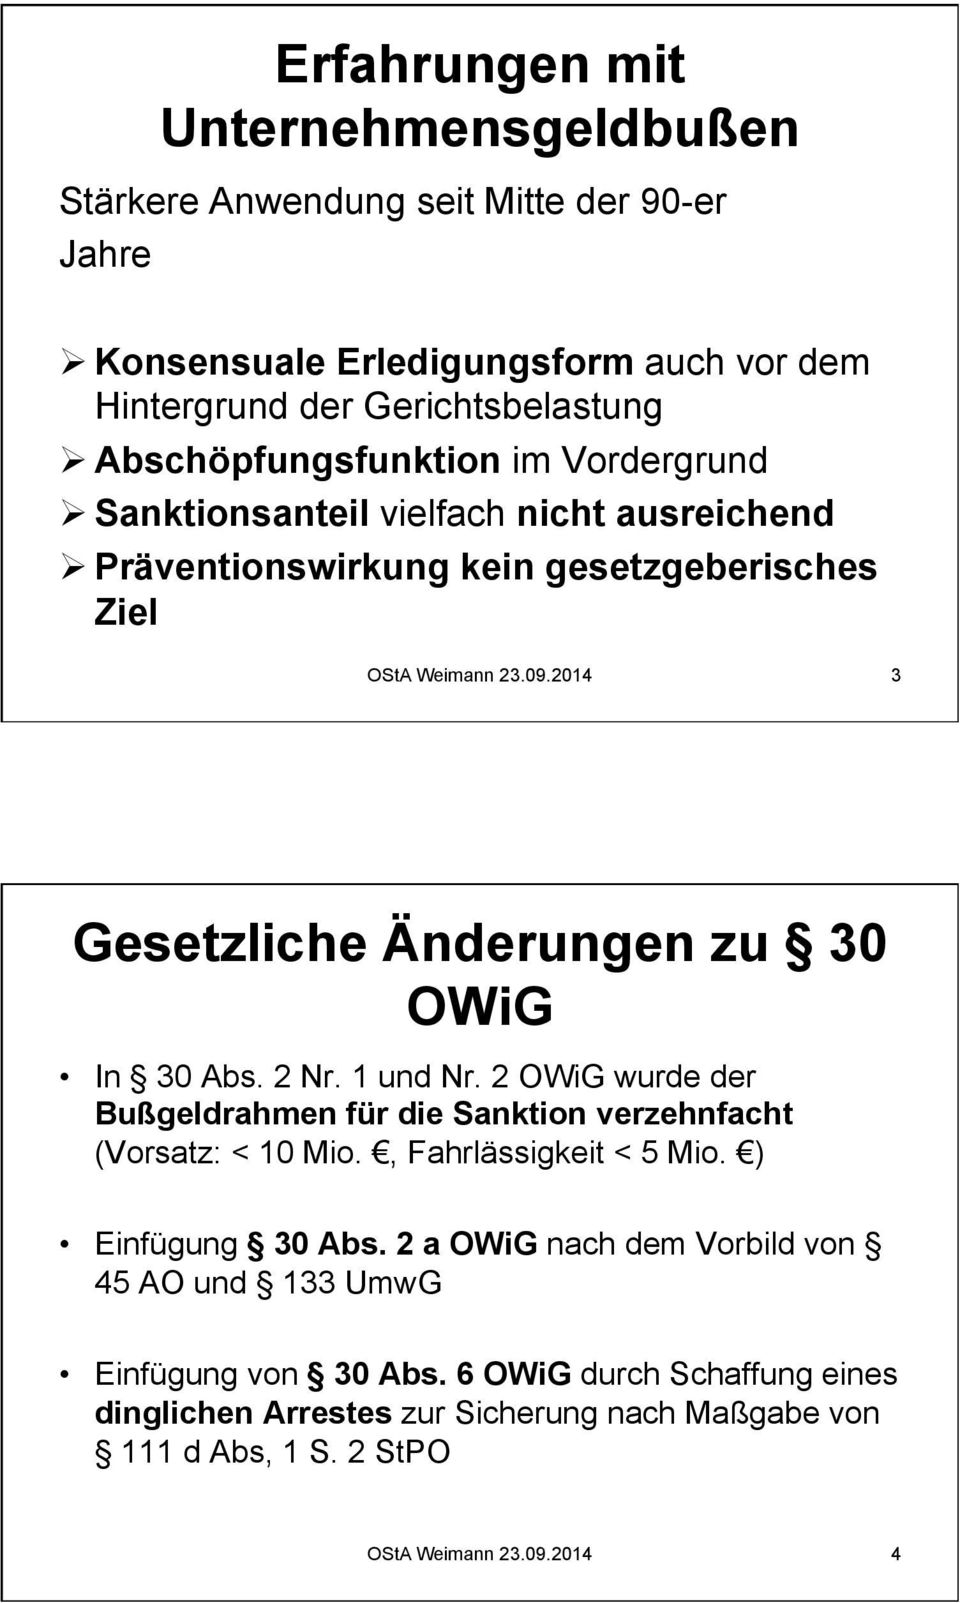 2014 3 Gesetzliche Änderungen zu 30 OWiG In 30 Abs. 2 Nr. 1 und Nr. 2 OWiG wurde der Bußgeldrahmen für die Sanktion verzehnfacht (Vorsatz: < 10 Mio., Fahrlässigkeit < 5 Mio.